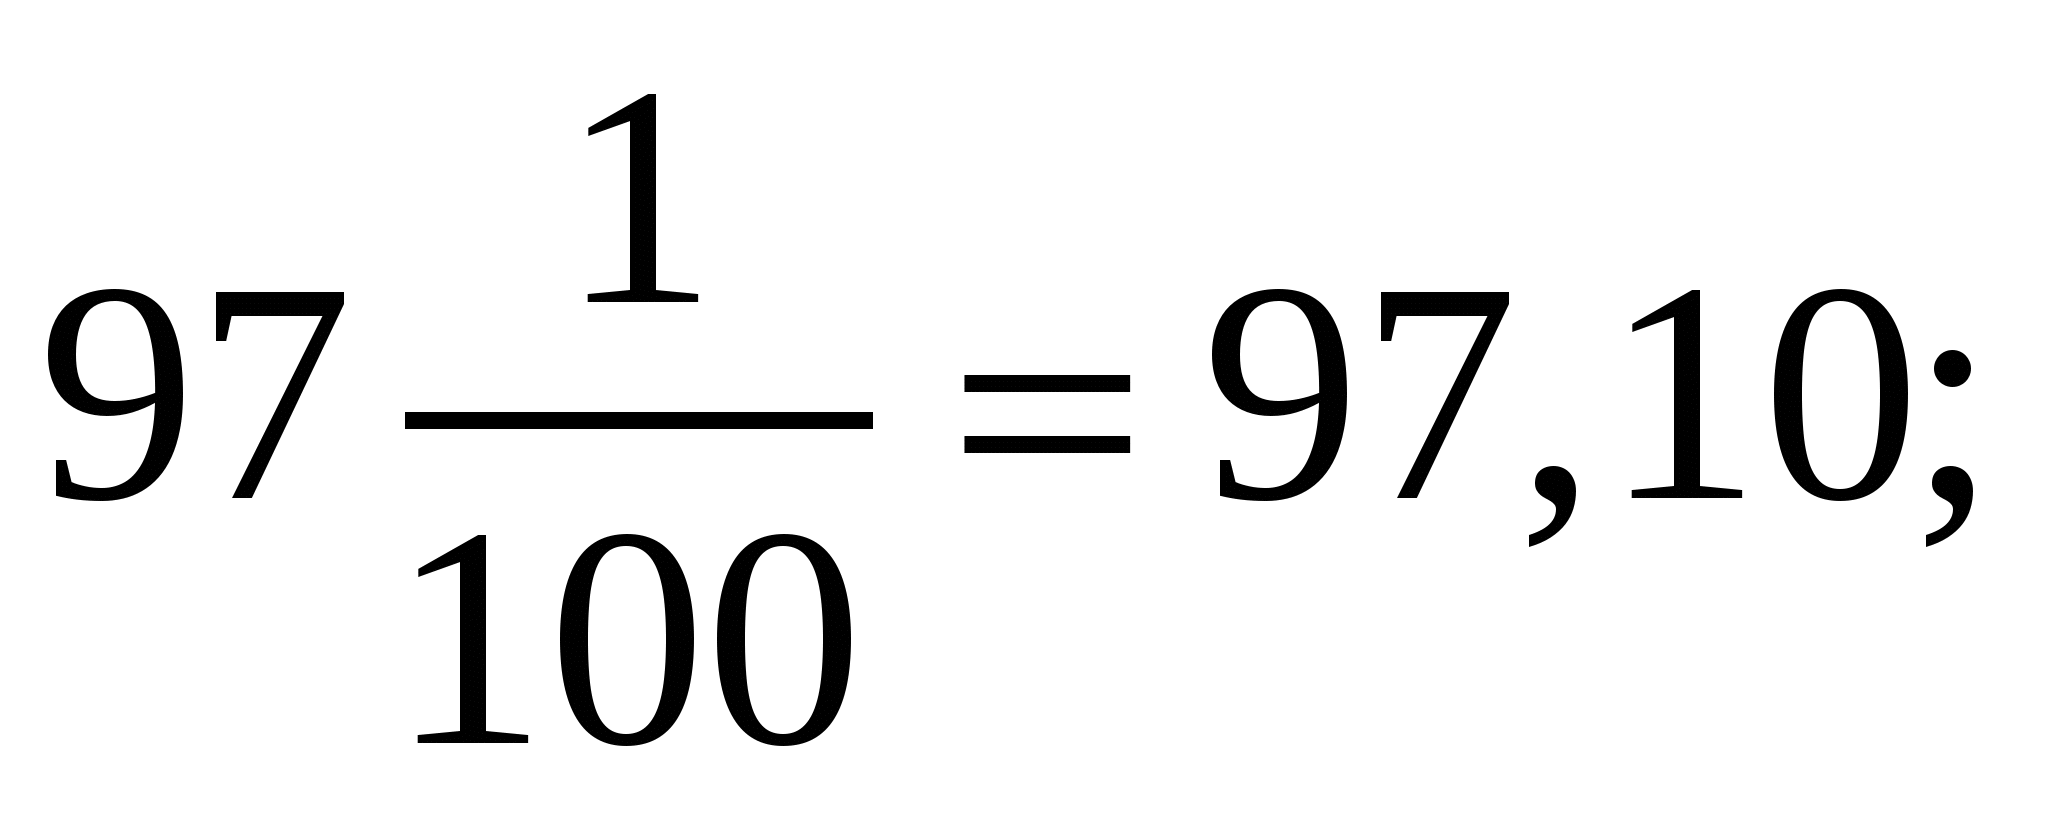 Урок по математике для 5 класса по теме «Сравнение десятичных дробей»